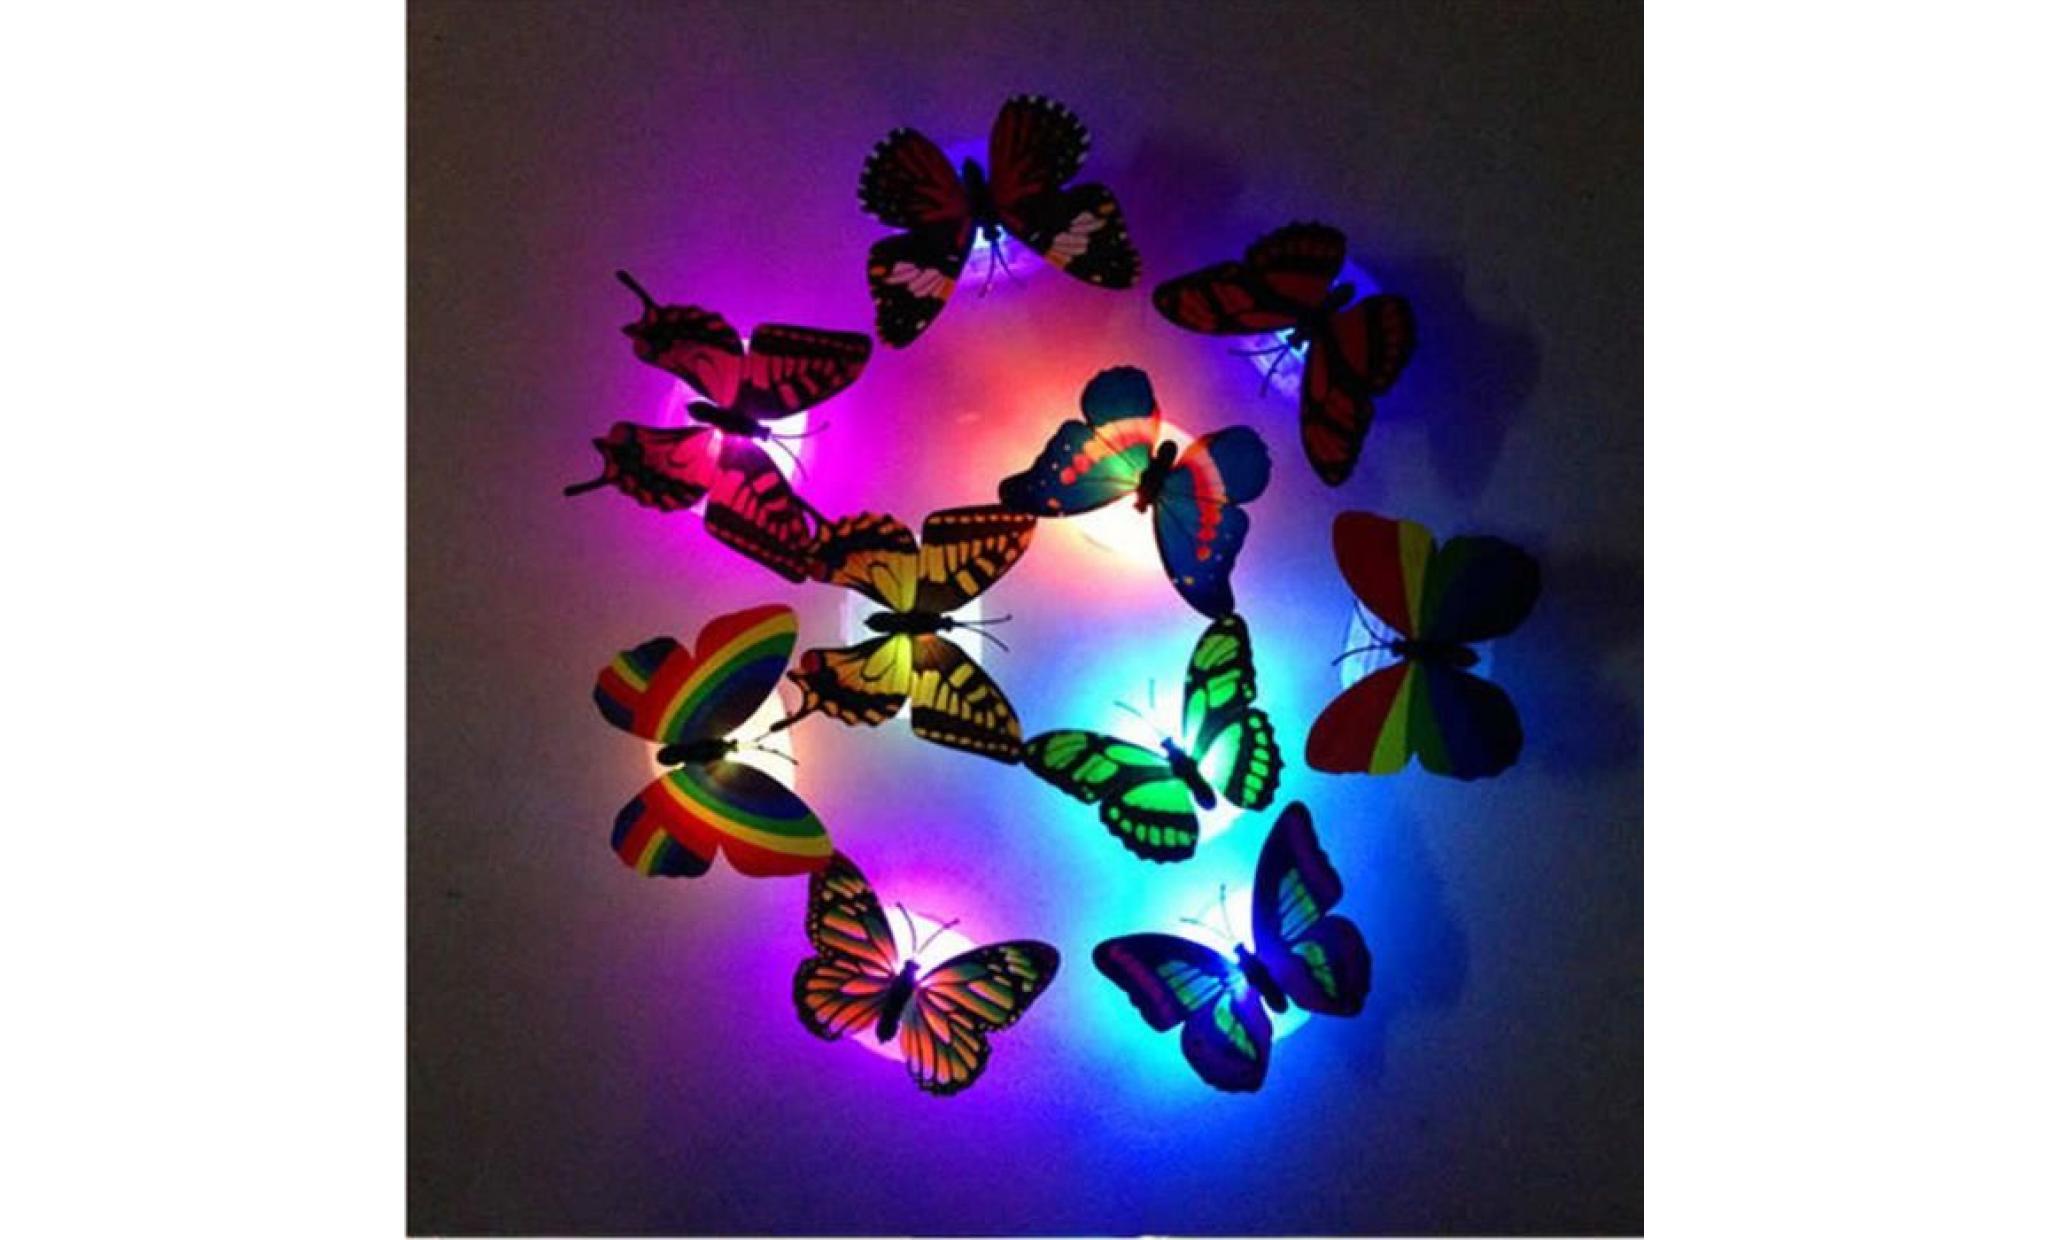 iportan® coloré changement led papillon de nuit lampe accueil salle des fêtes bureau décorations blanc chaud_love192 pas cher